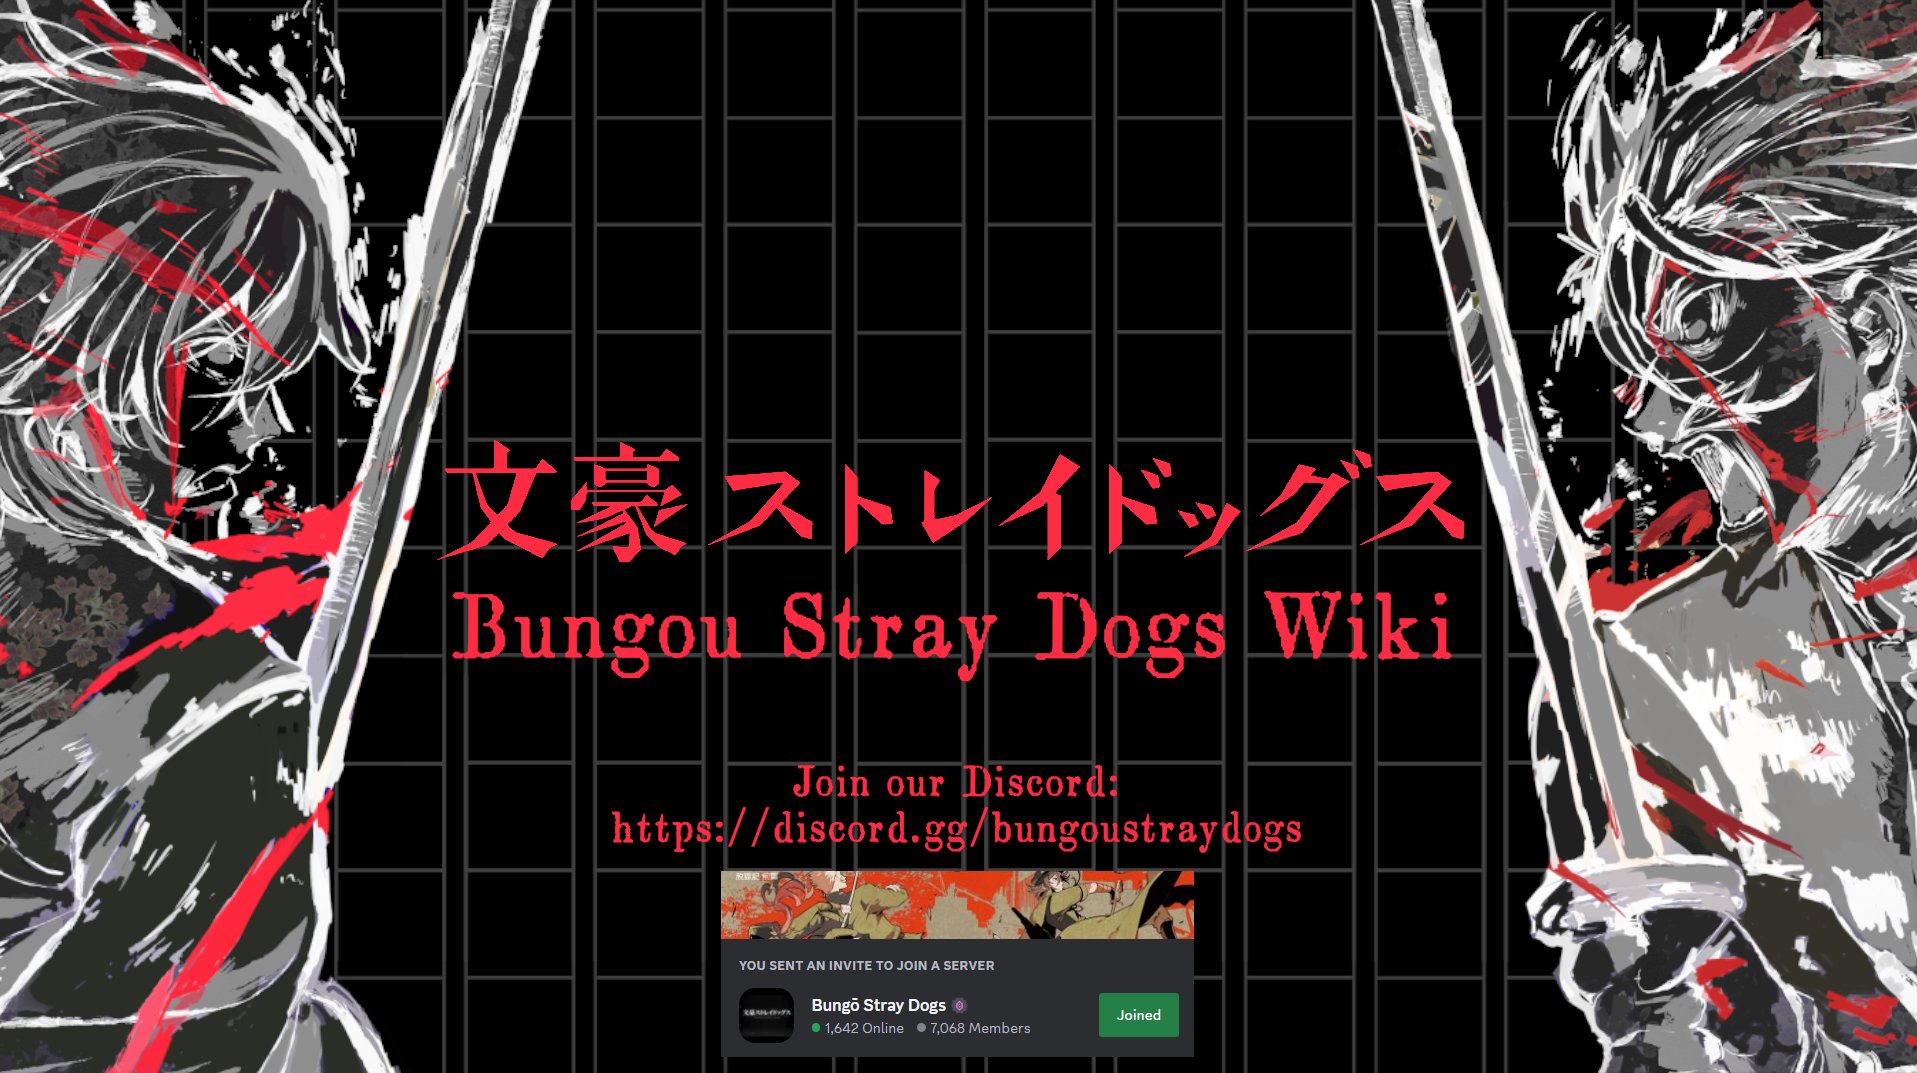 Bungo Stray Dogs Wiki | 文ストウイキ (@Bungosdwiki) / X